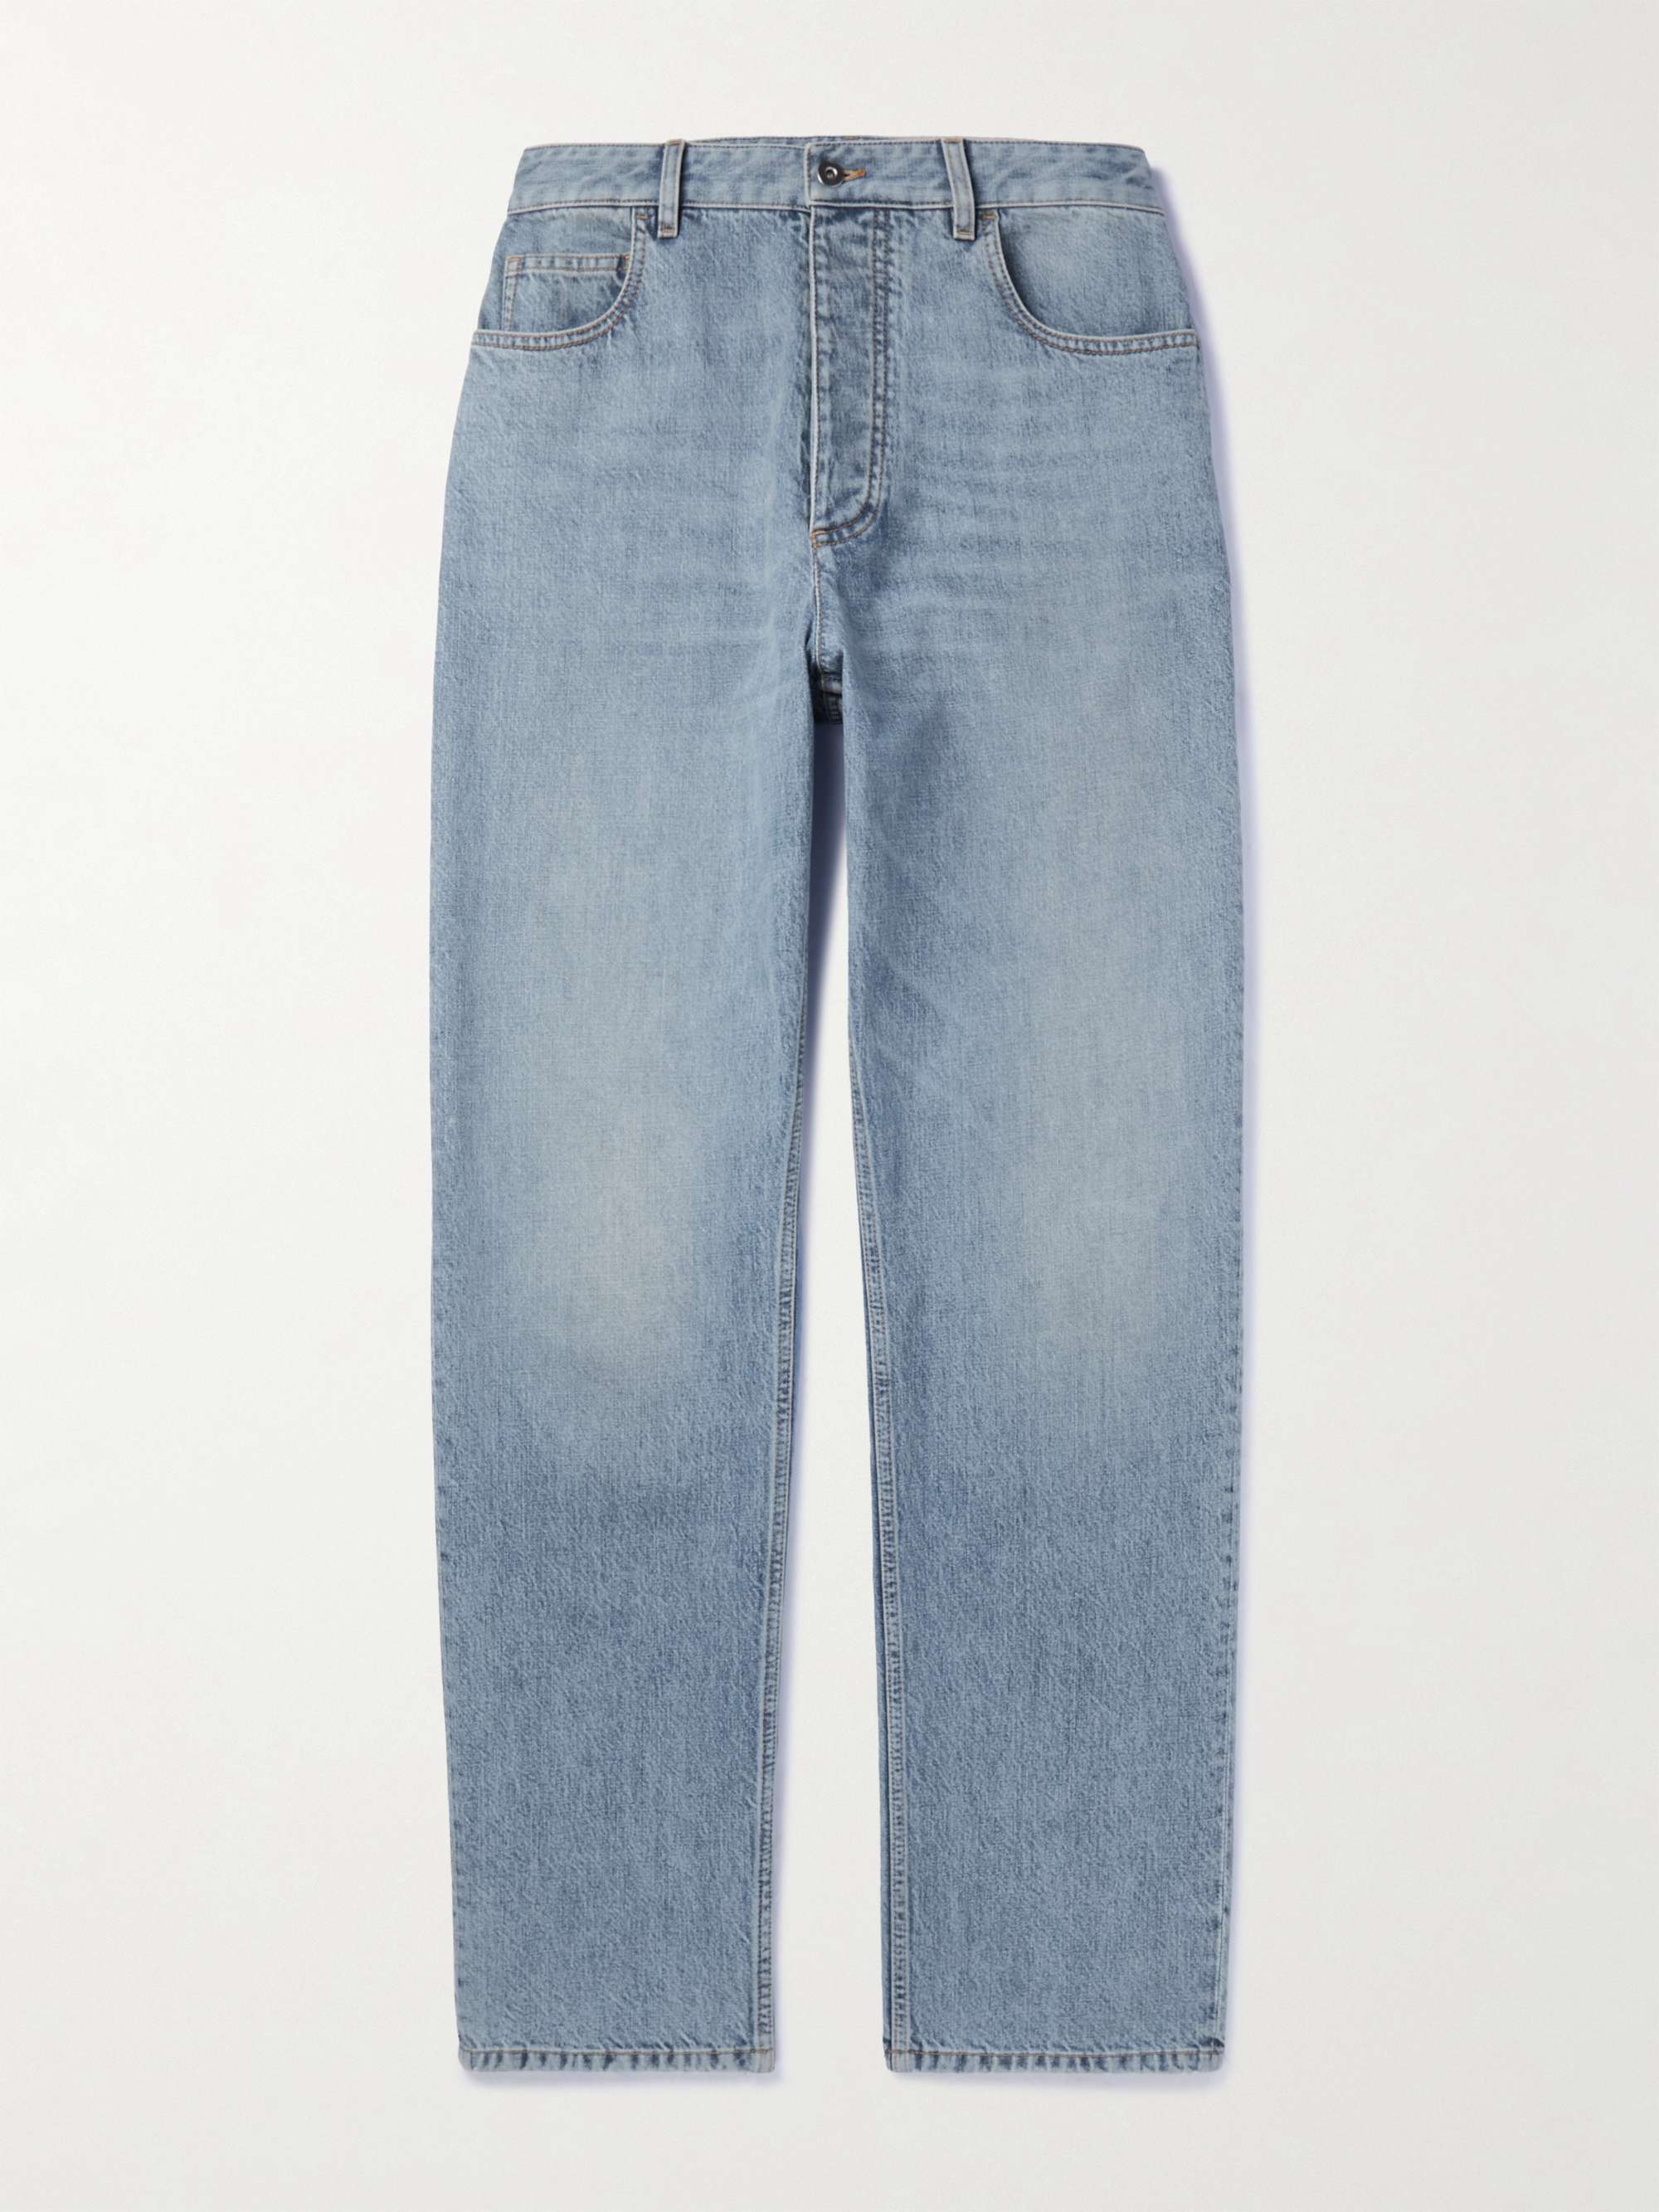 BOTTEGA VENETA Straight-Leg Jeans for Men | MR PORTER